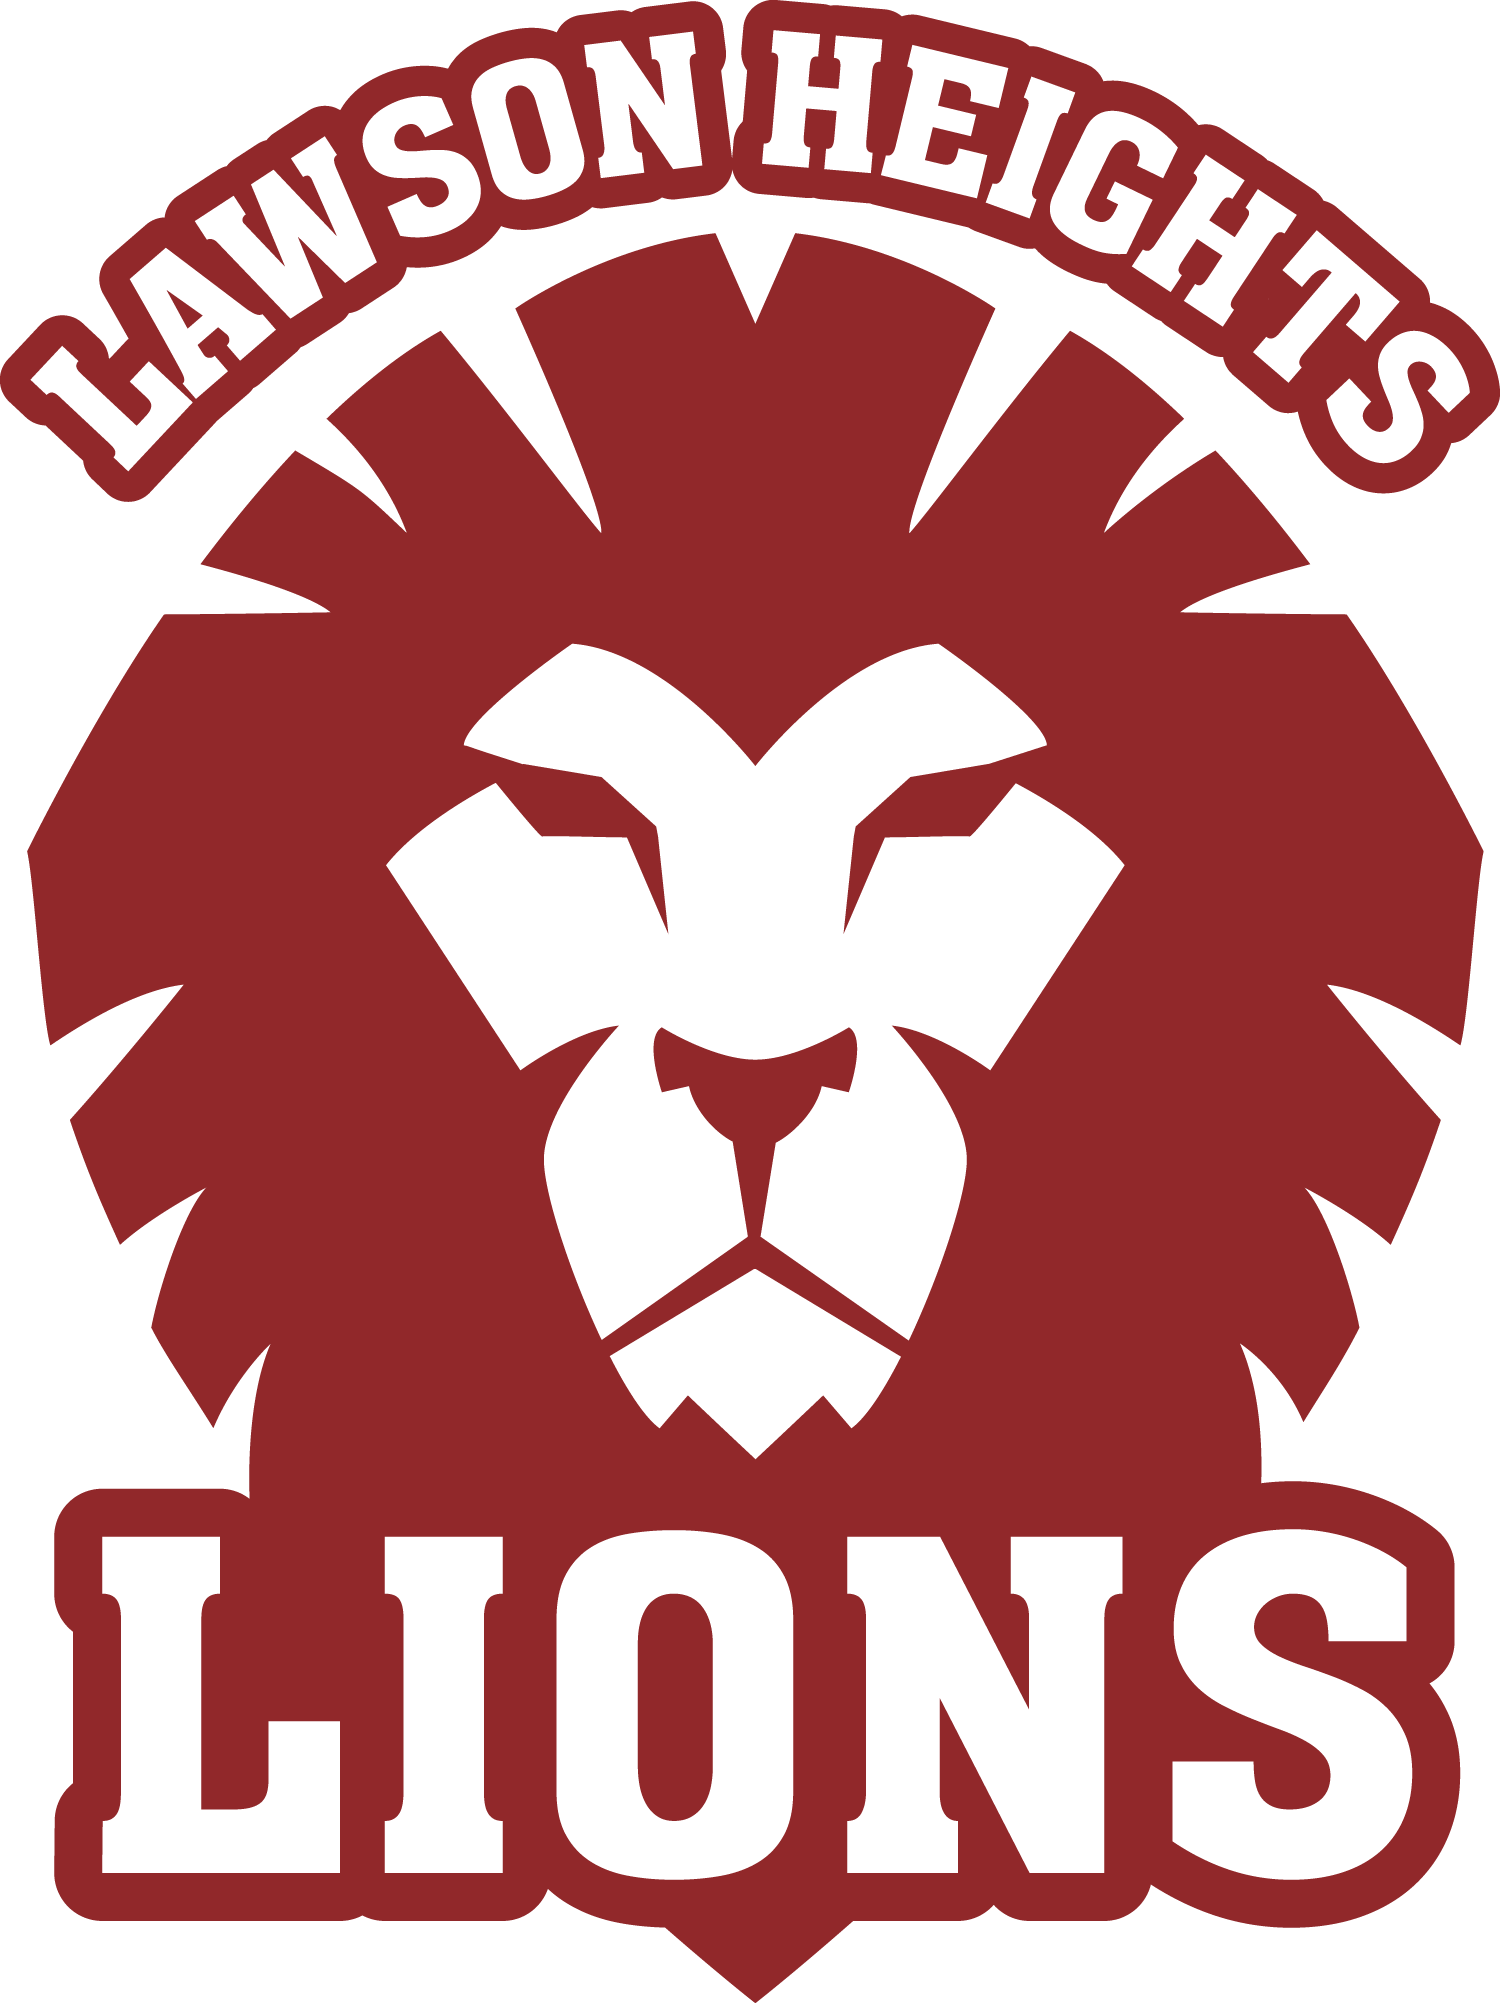 Lawson Logo - Lawson Heights School - Lawson Heights School